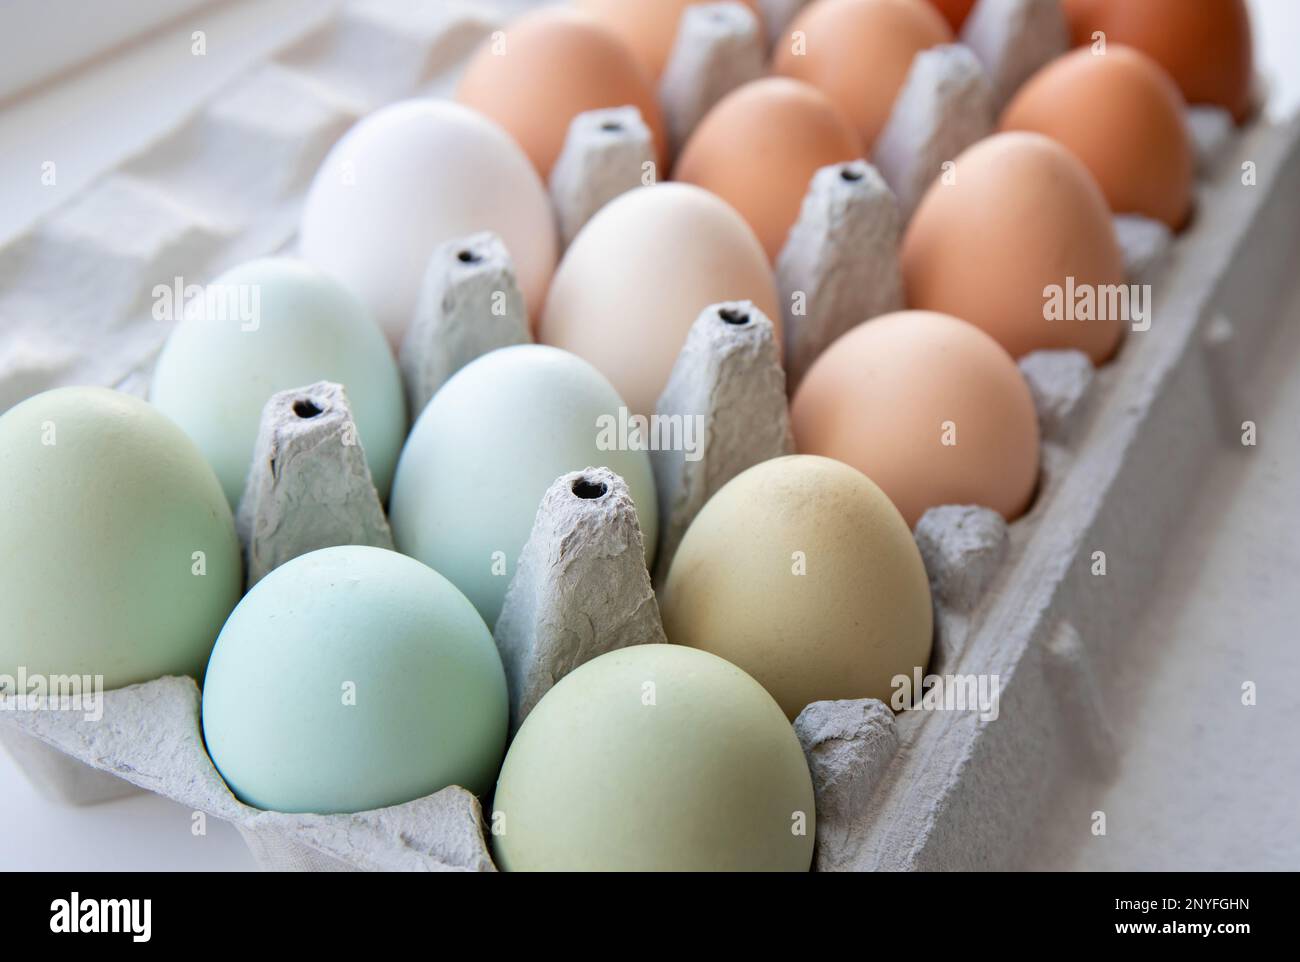 Lot d'œufs de poulet de différentes couleurs disposés par couleur sur une boîte à œufs en papier. Toutes sortes de couleurs : bleu, vert, blanc, beige, marron. Banque D'Images